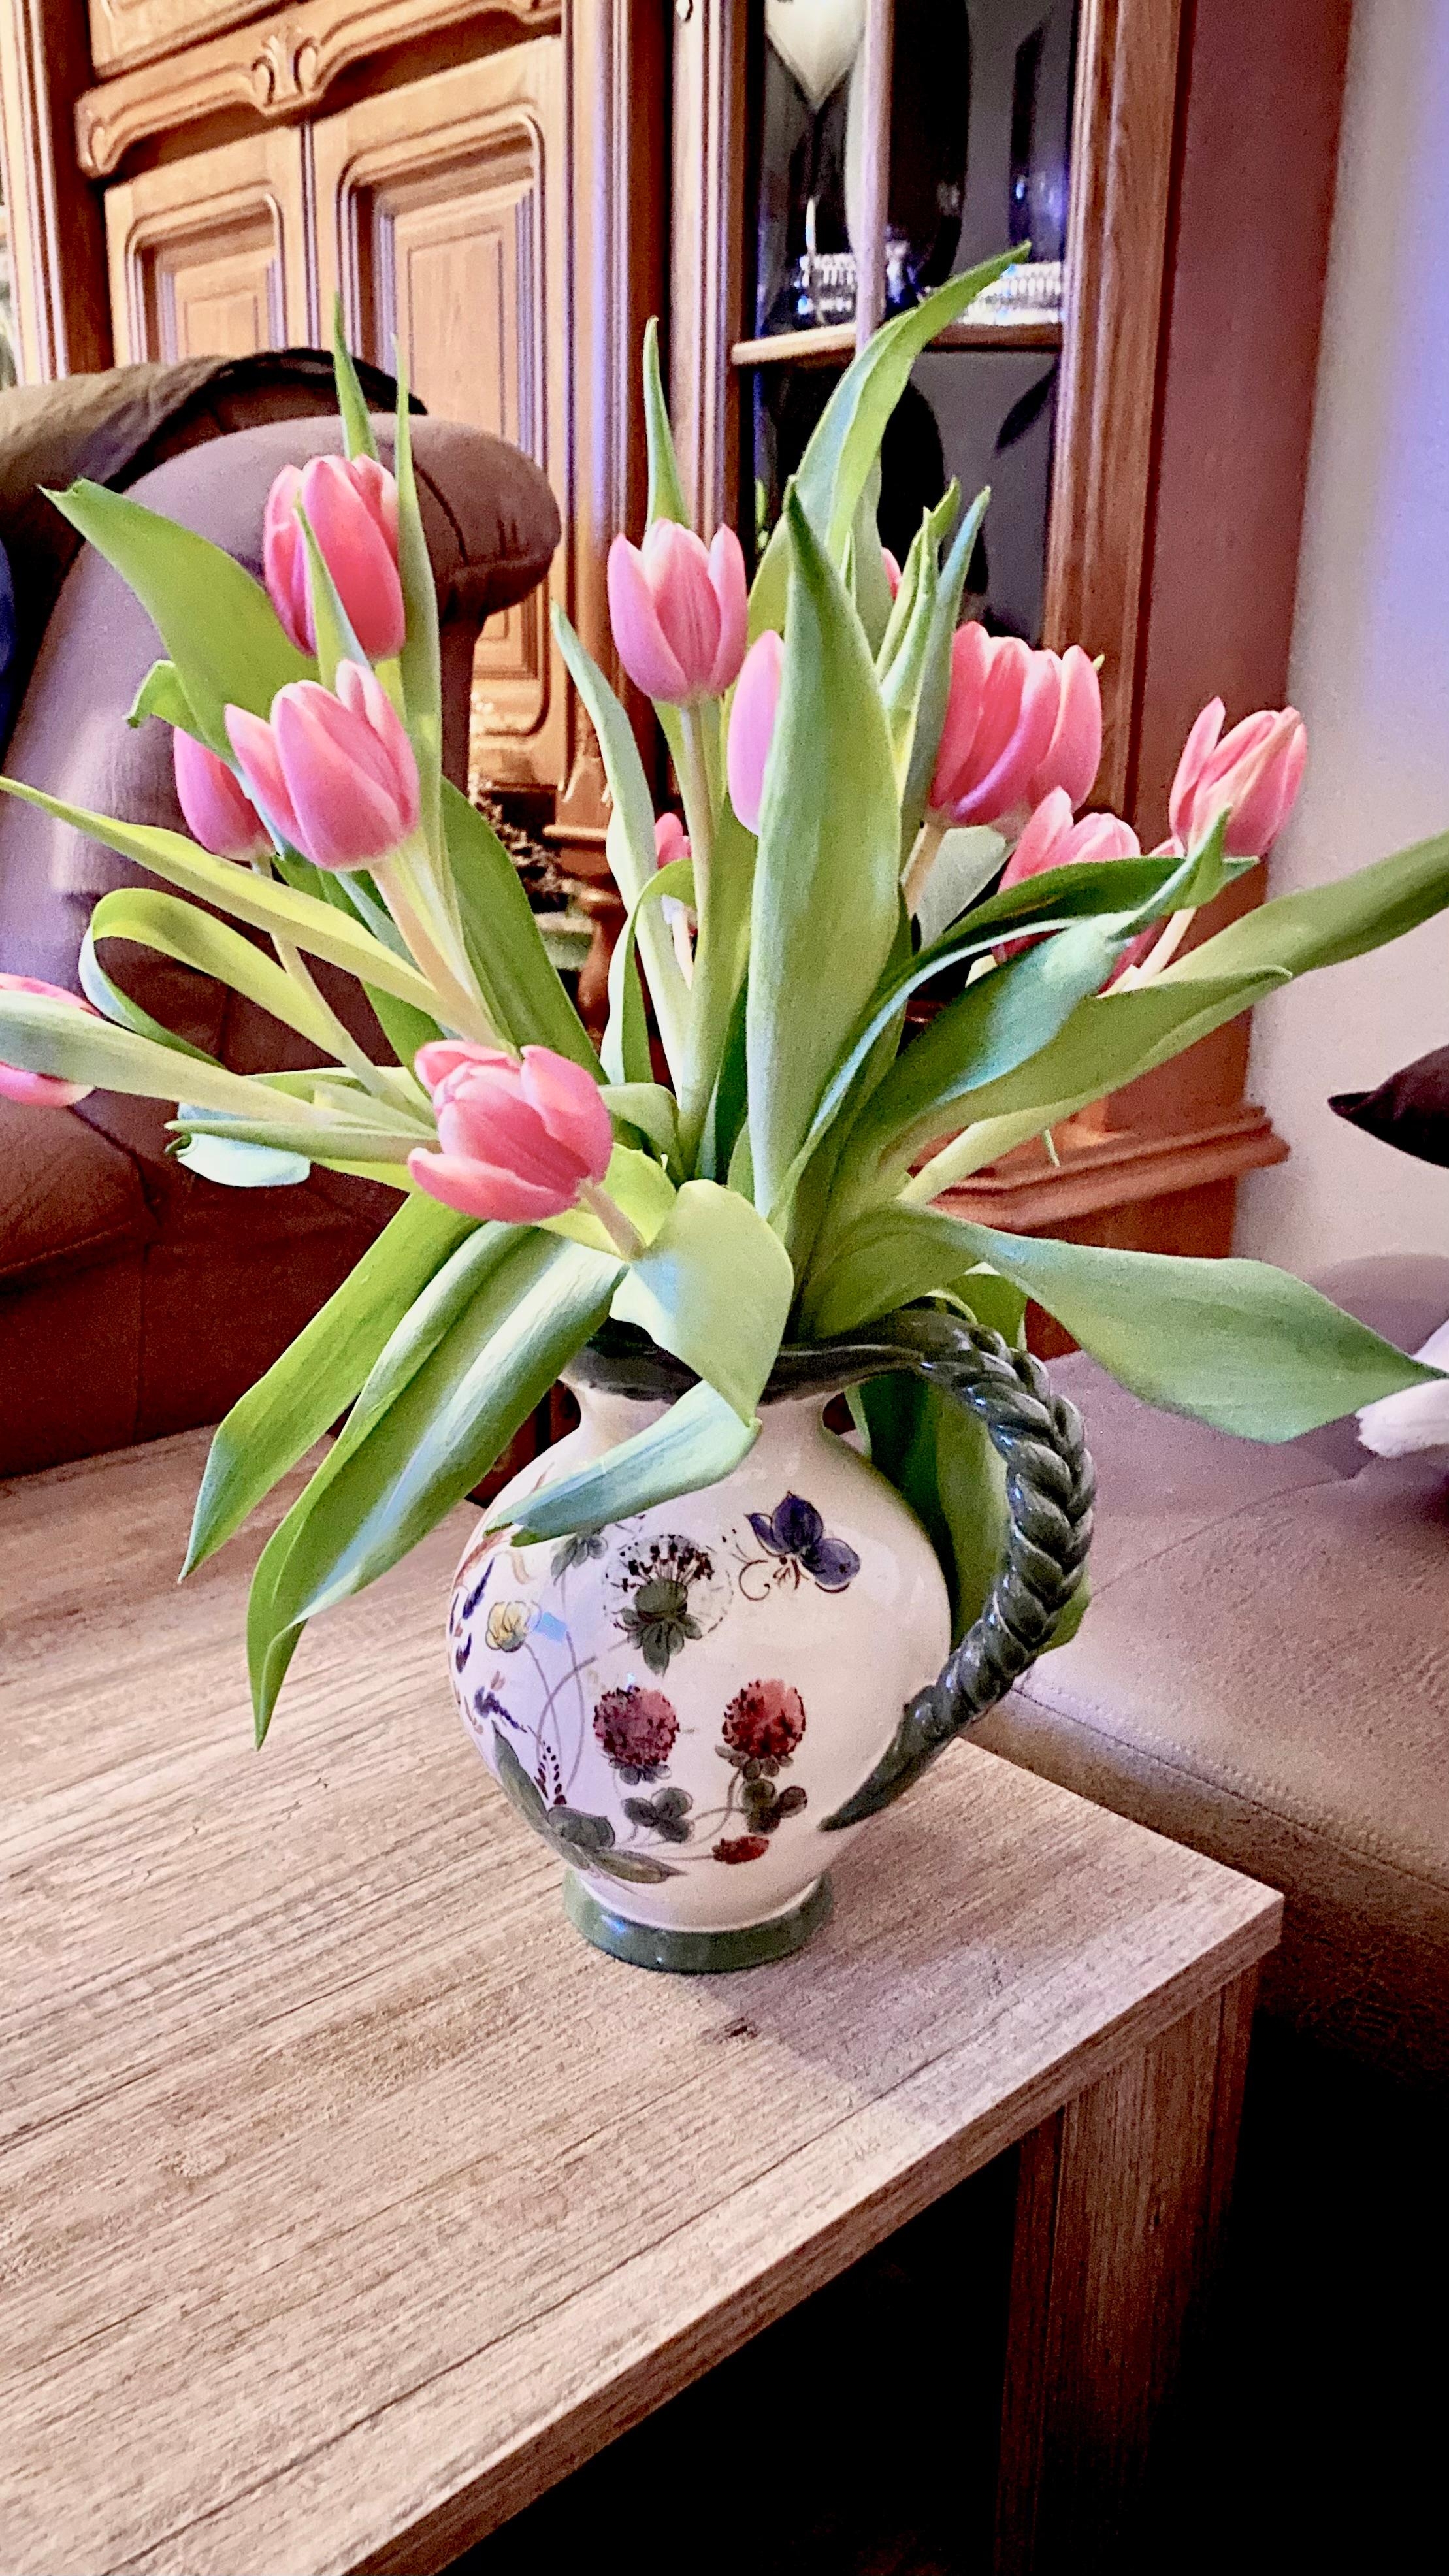 Den Frühling vorzeitig nach Hause geholt. #tulpen #blumenliebe
Schönes Wochenende 😃
